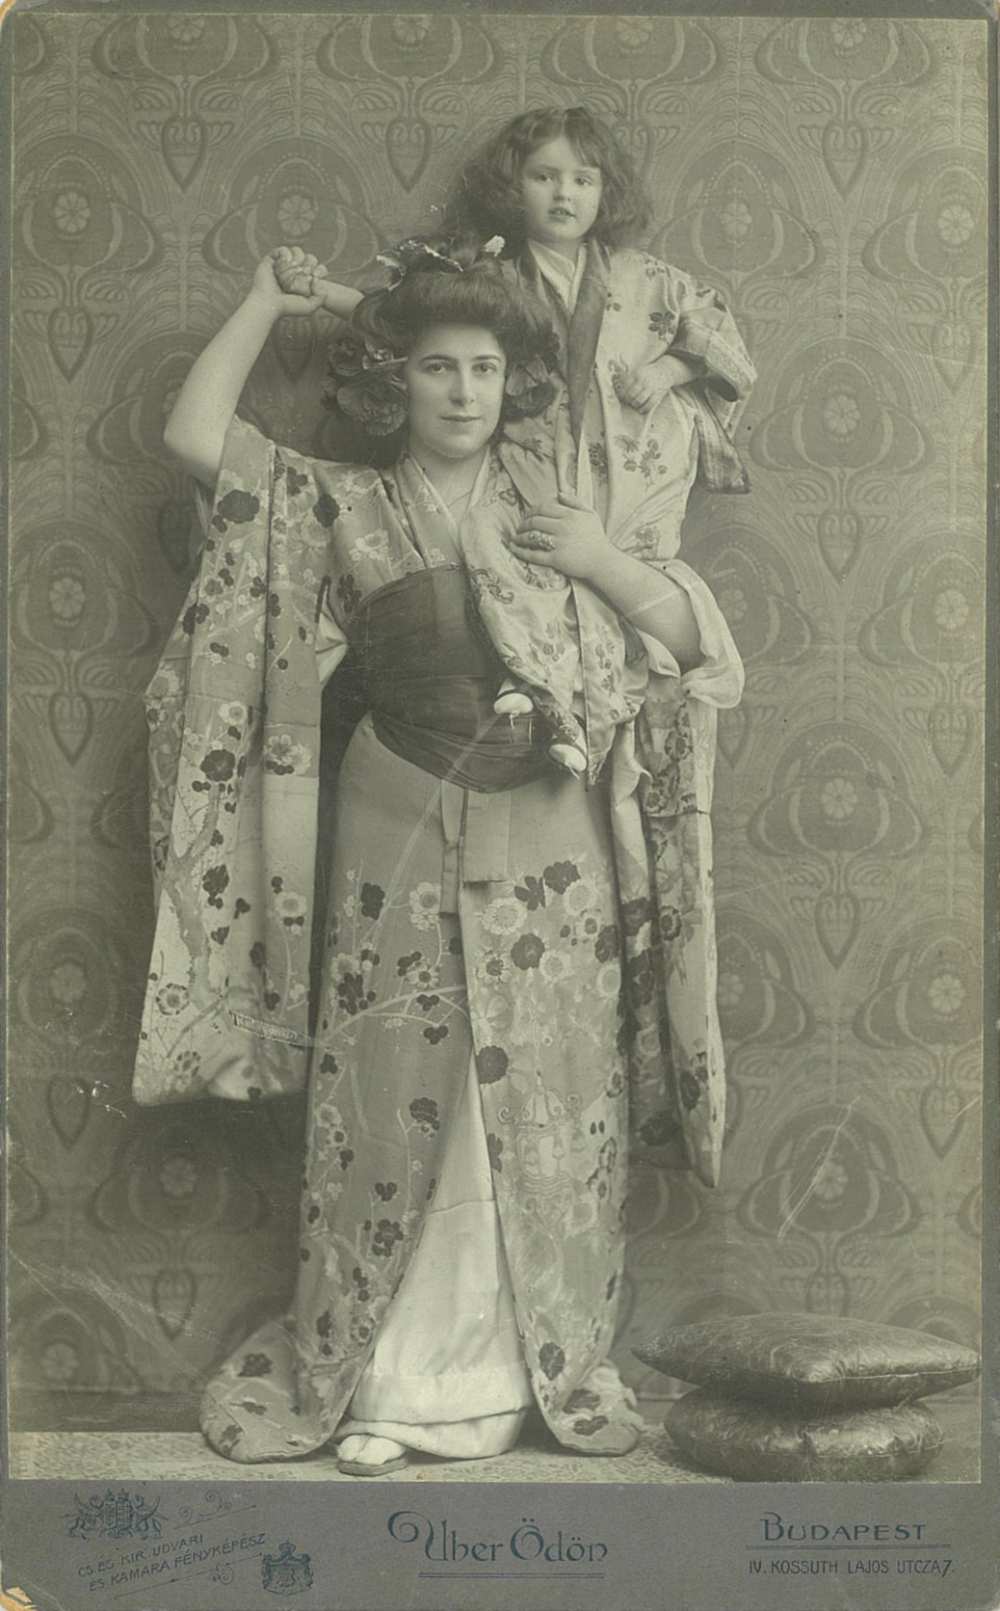 Benkő Etelka mint Pillangókisasszony. Szerepkép, 1906. Jelzet: KB 21.094 – Színháztörténeti és Zeneműtár